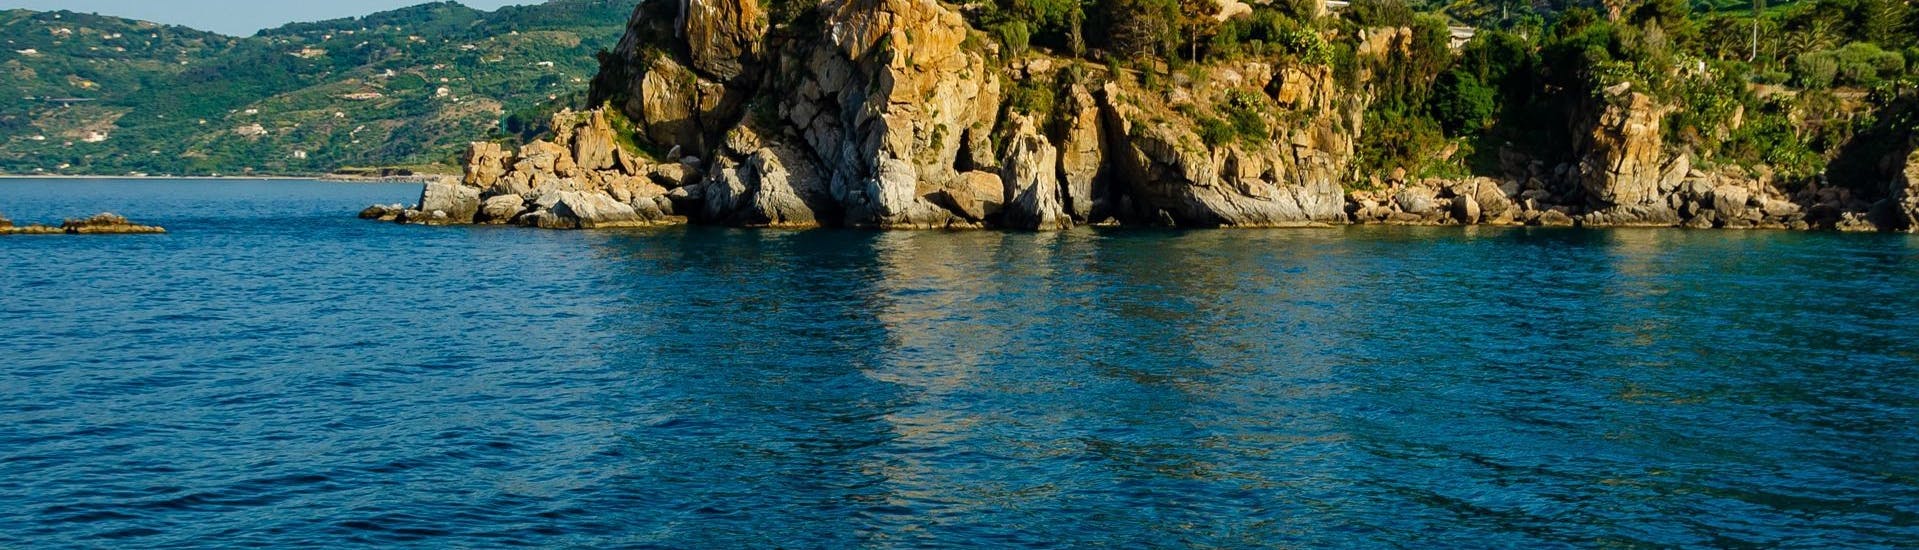 Bild der Küste von Cefalù, aufgenommen von einem Boot der Marina Yachting Cefalù während der privaten Bootstour entlang der Küste von Cefalù.